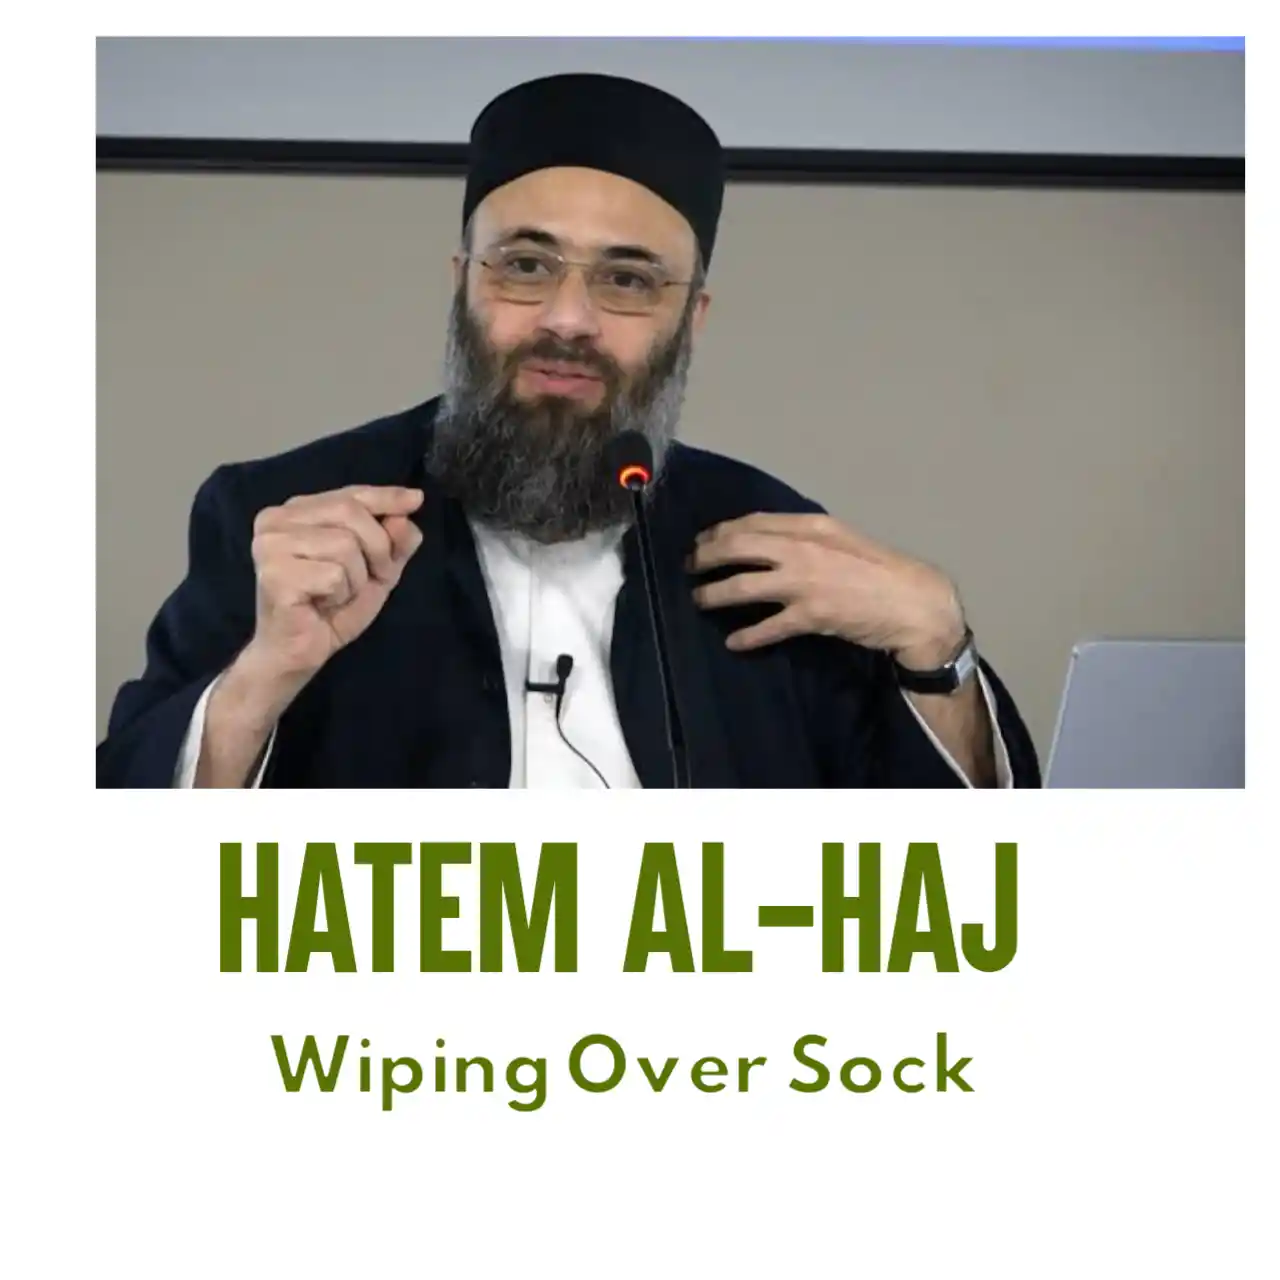 Hatem Al-Haj Wiping Over Sock